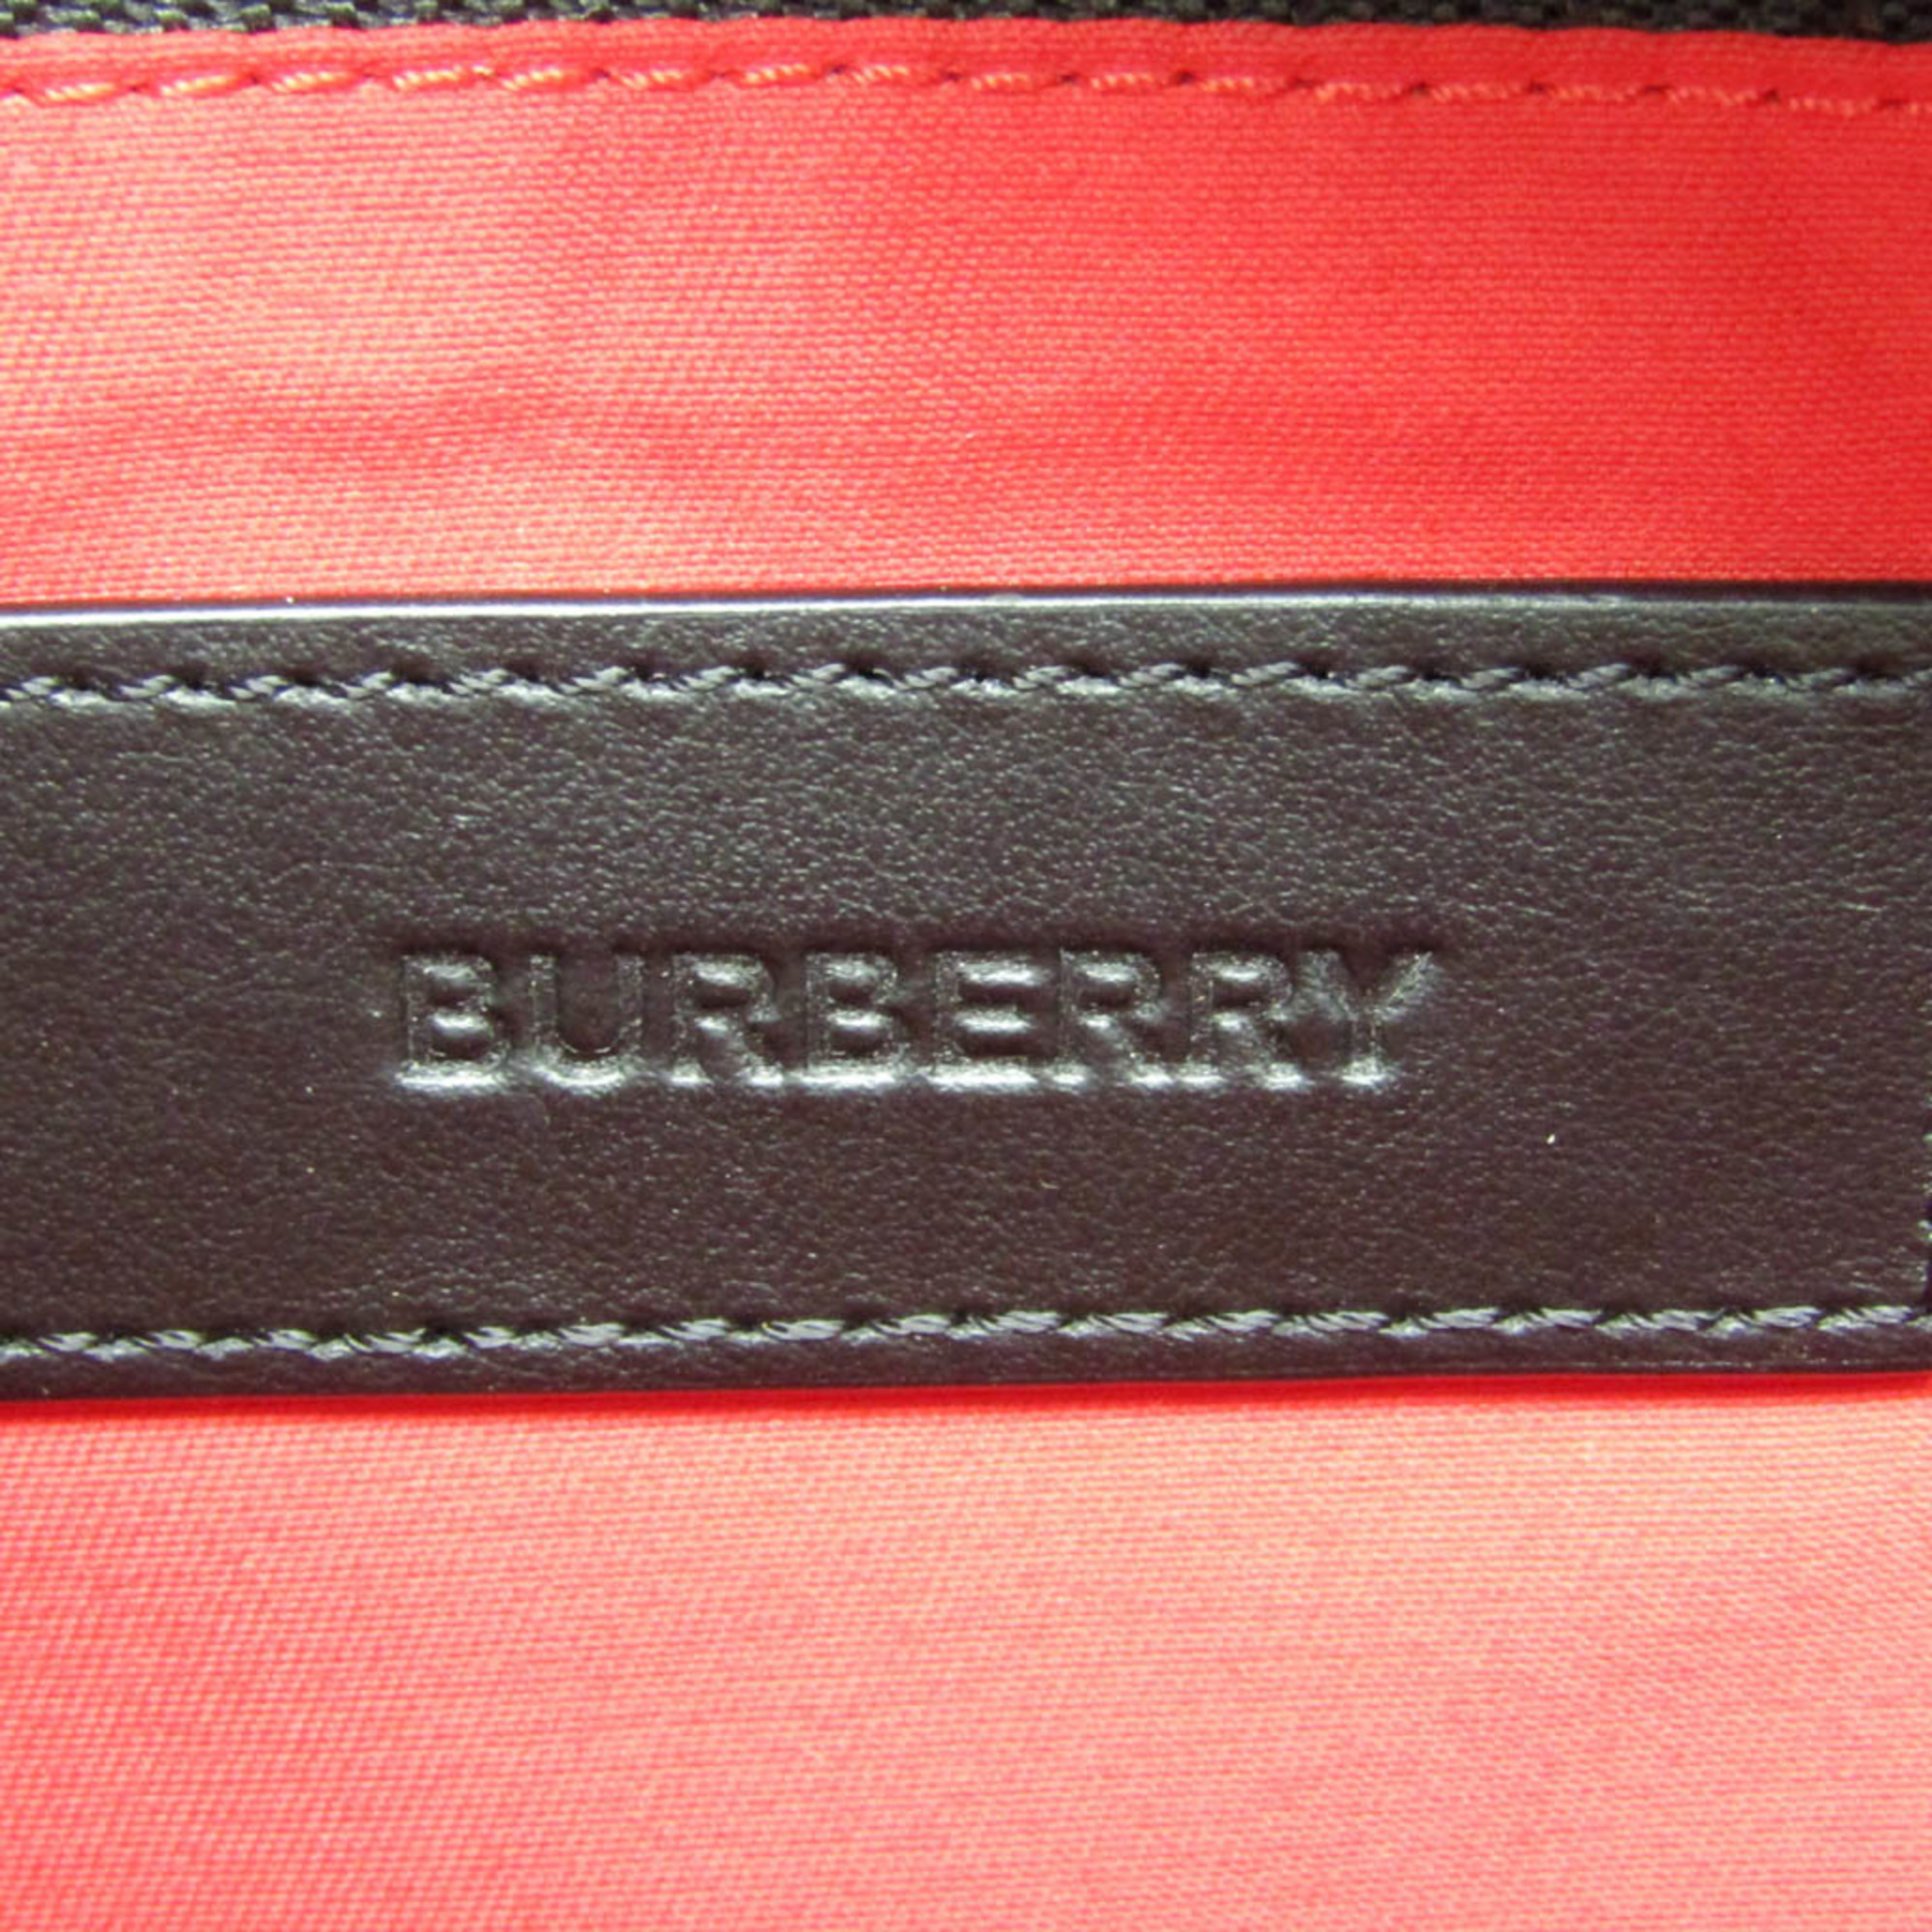 Burberry Portrait 8017483 Women,Men Polyester,Cotton Clutch Bag Beige